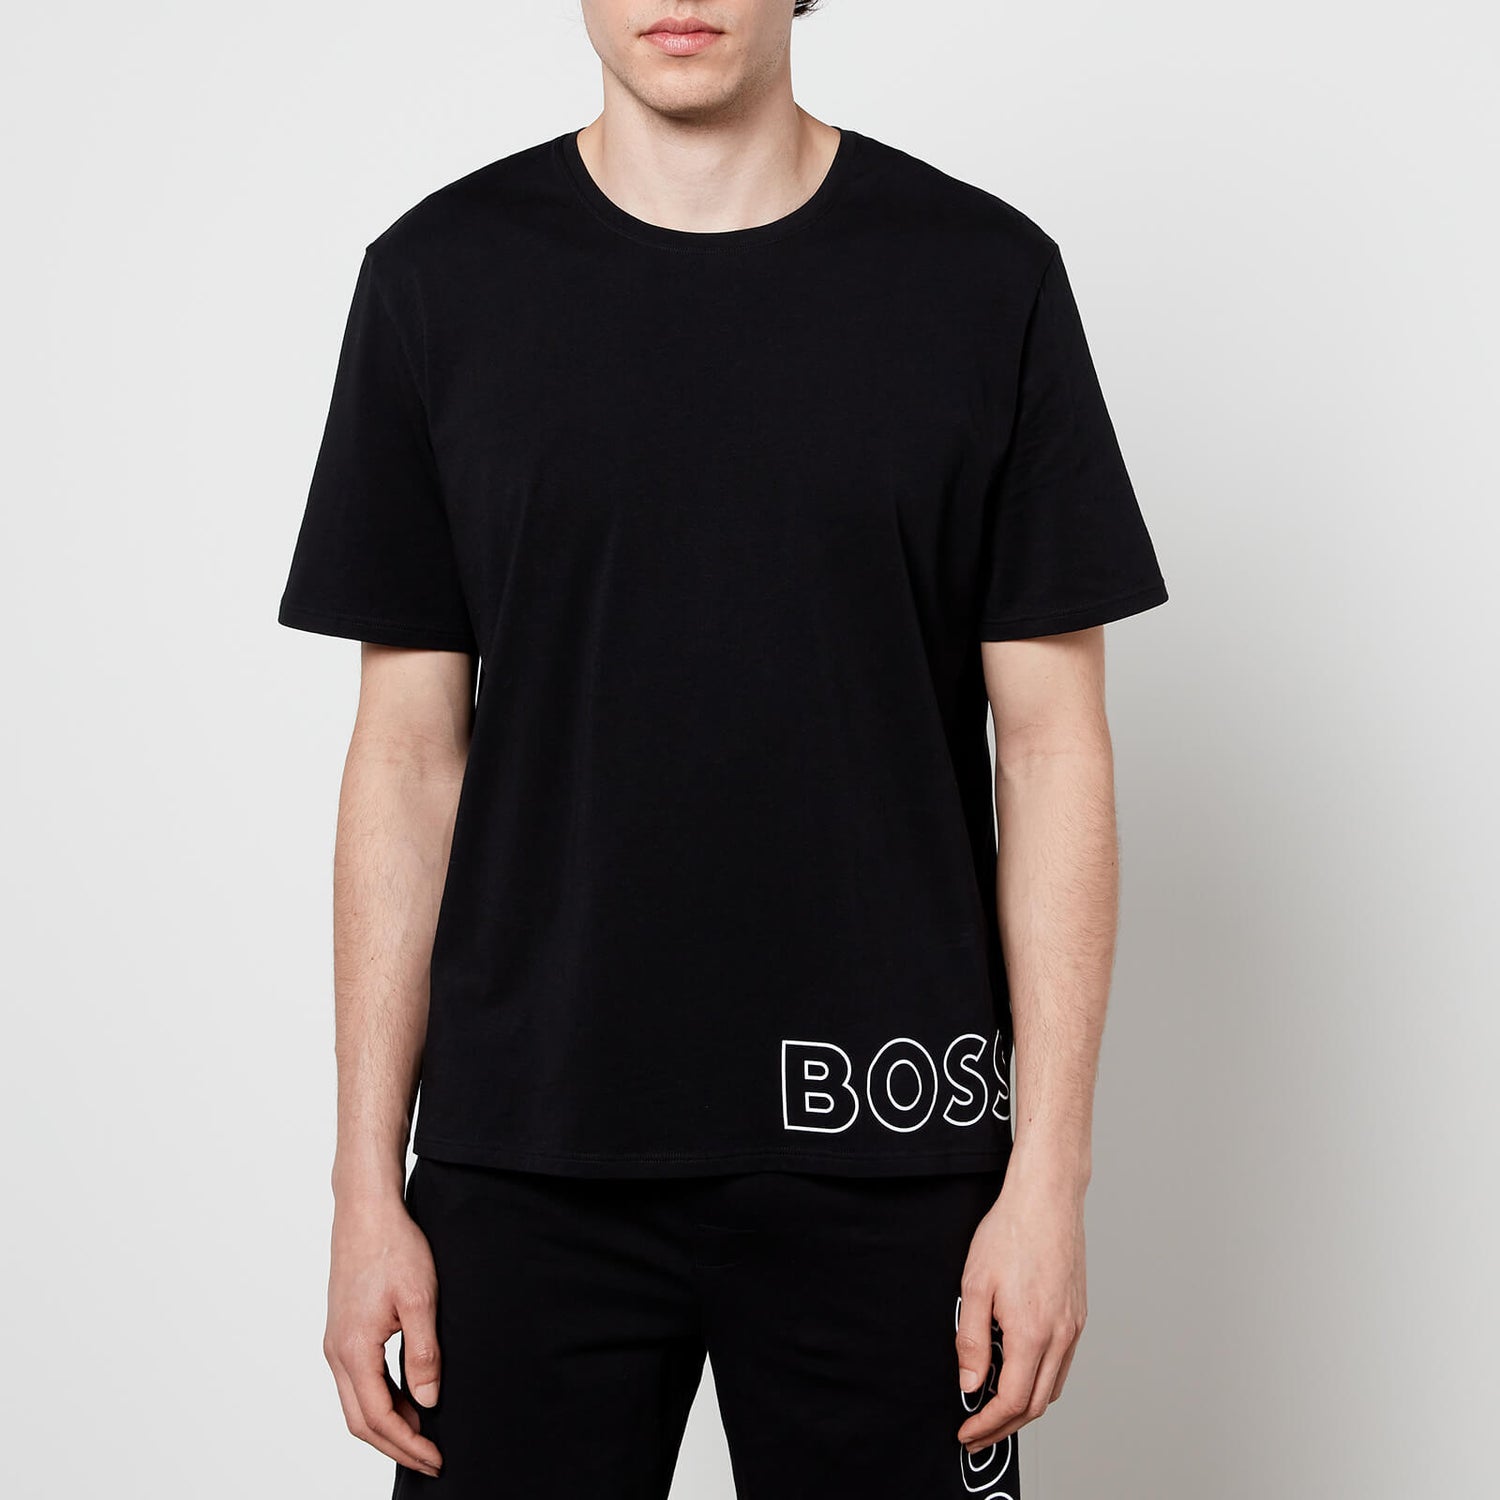 BOSS Bodywear Men's Identity T-Shirt - Black - S